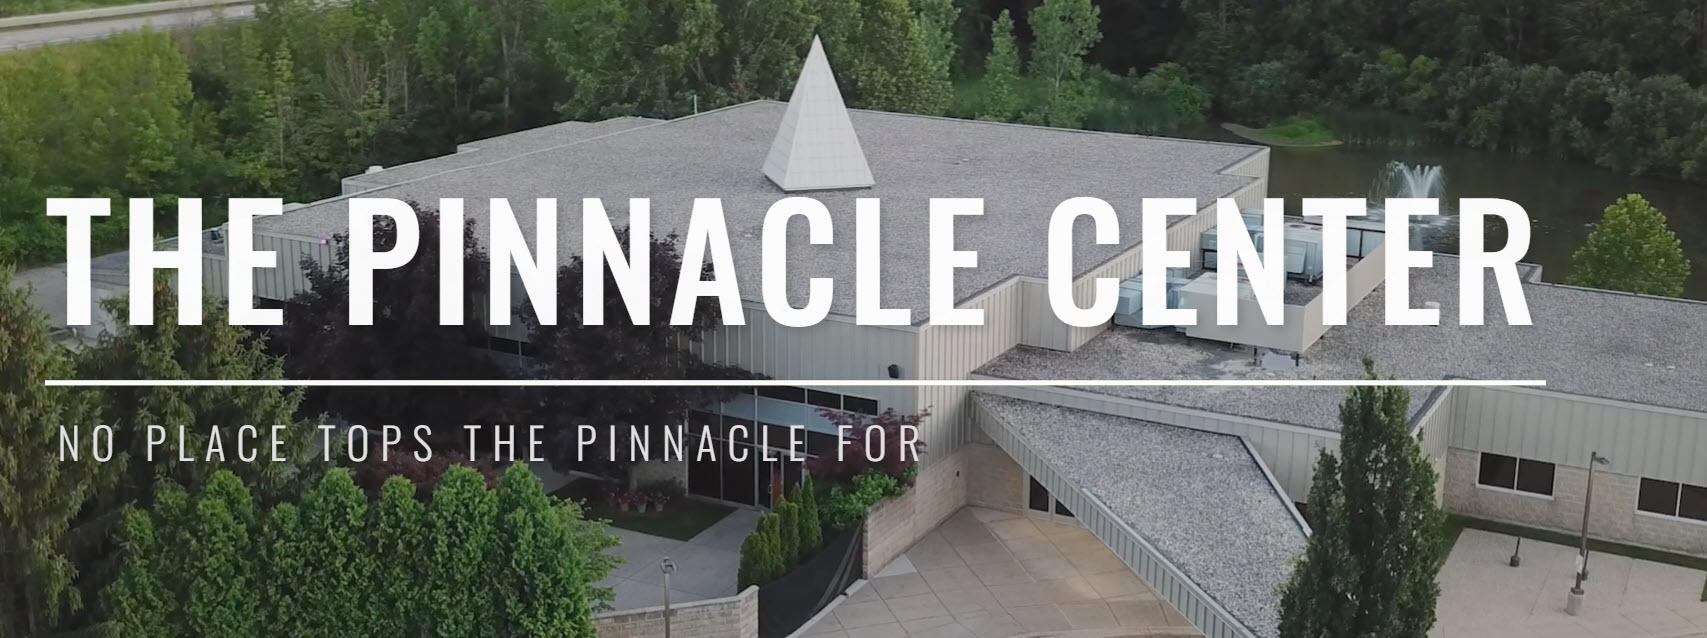 Pinnacle_Center_outside.jpg